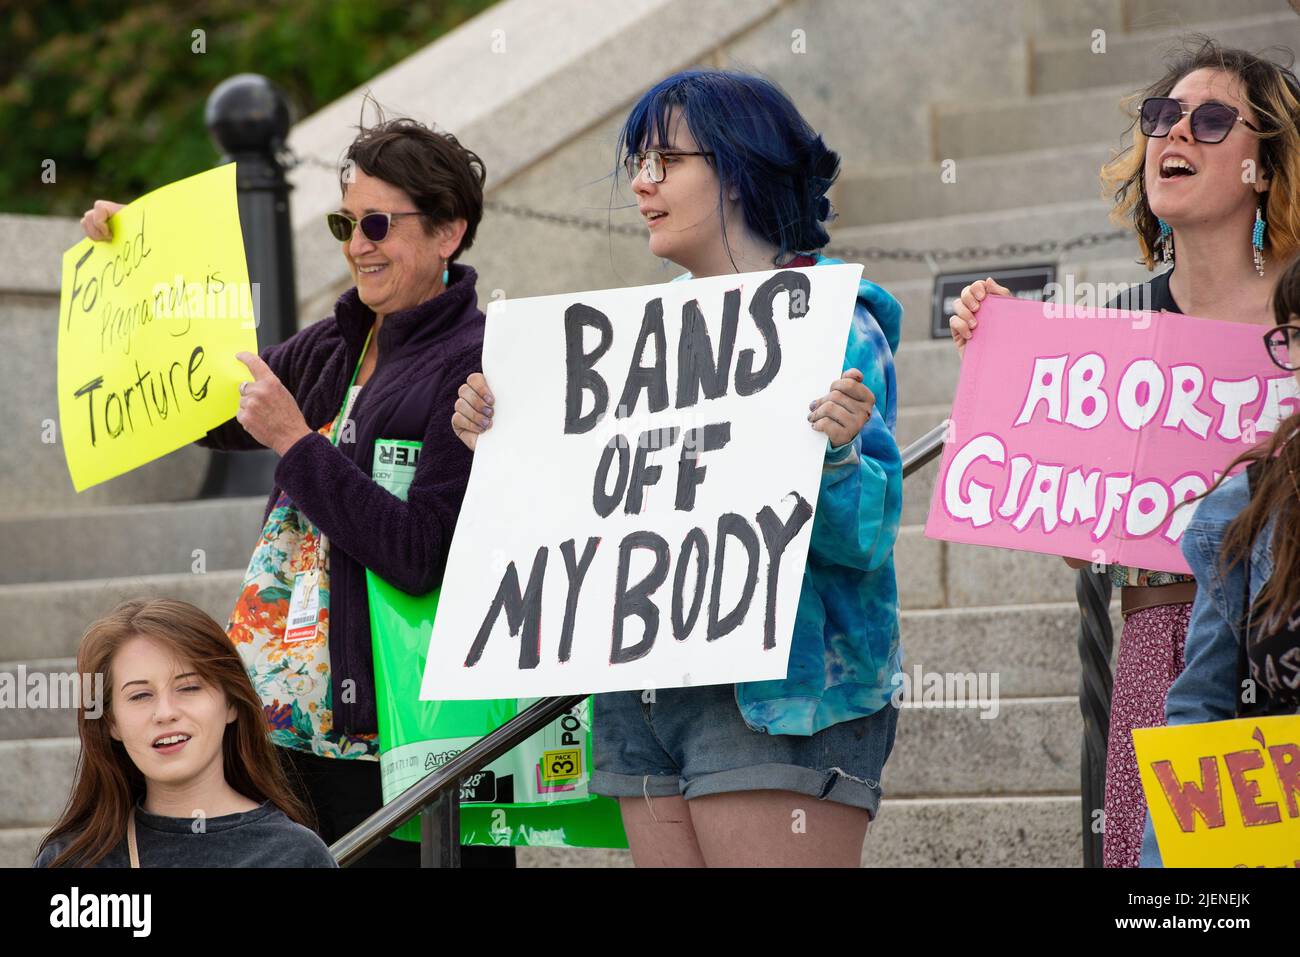 Helena, Montana - 24 de junio de 2022: Las mujeres que protestan en el capitolio del estado contra la prohibición del aborto por la Corte Suprema, sacan mi cuerpo, sosteniendo mi cuerpo por mi elección Foto de stock